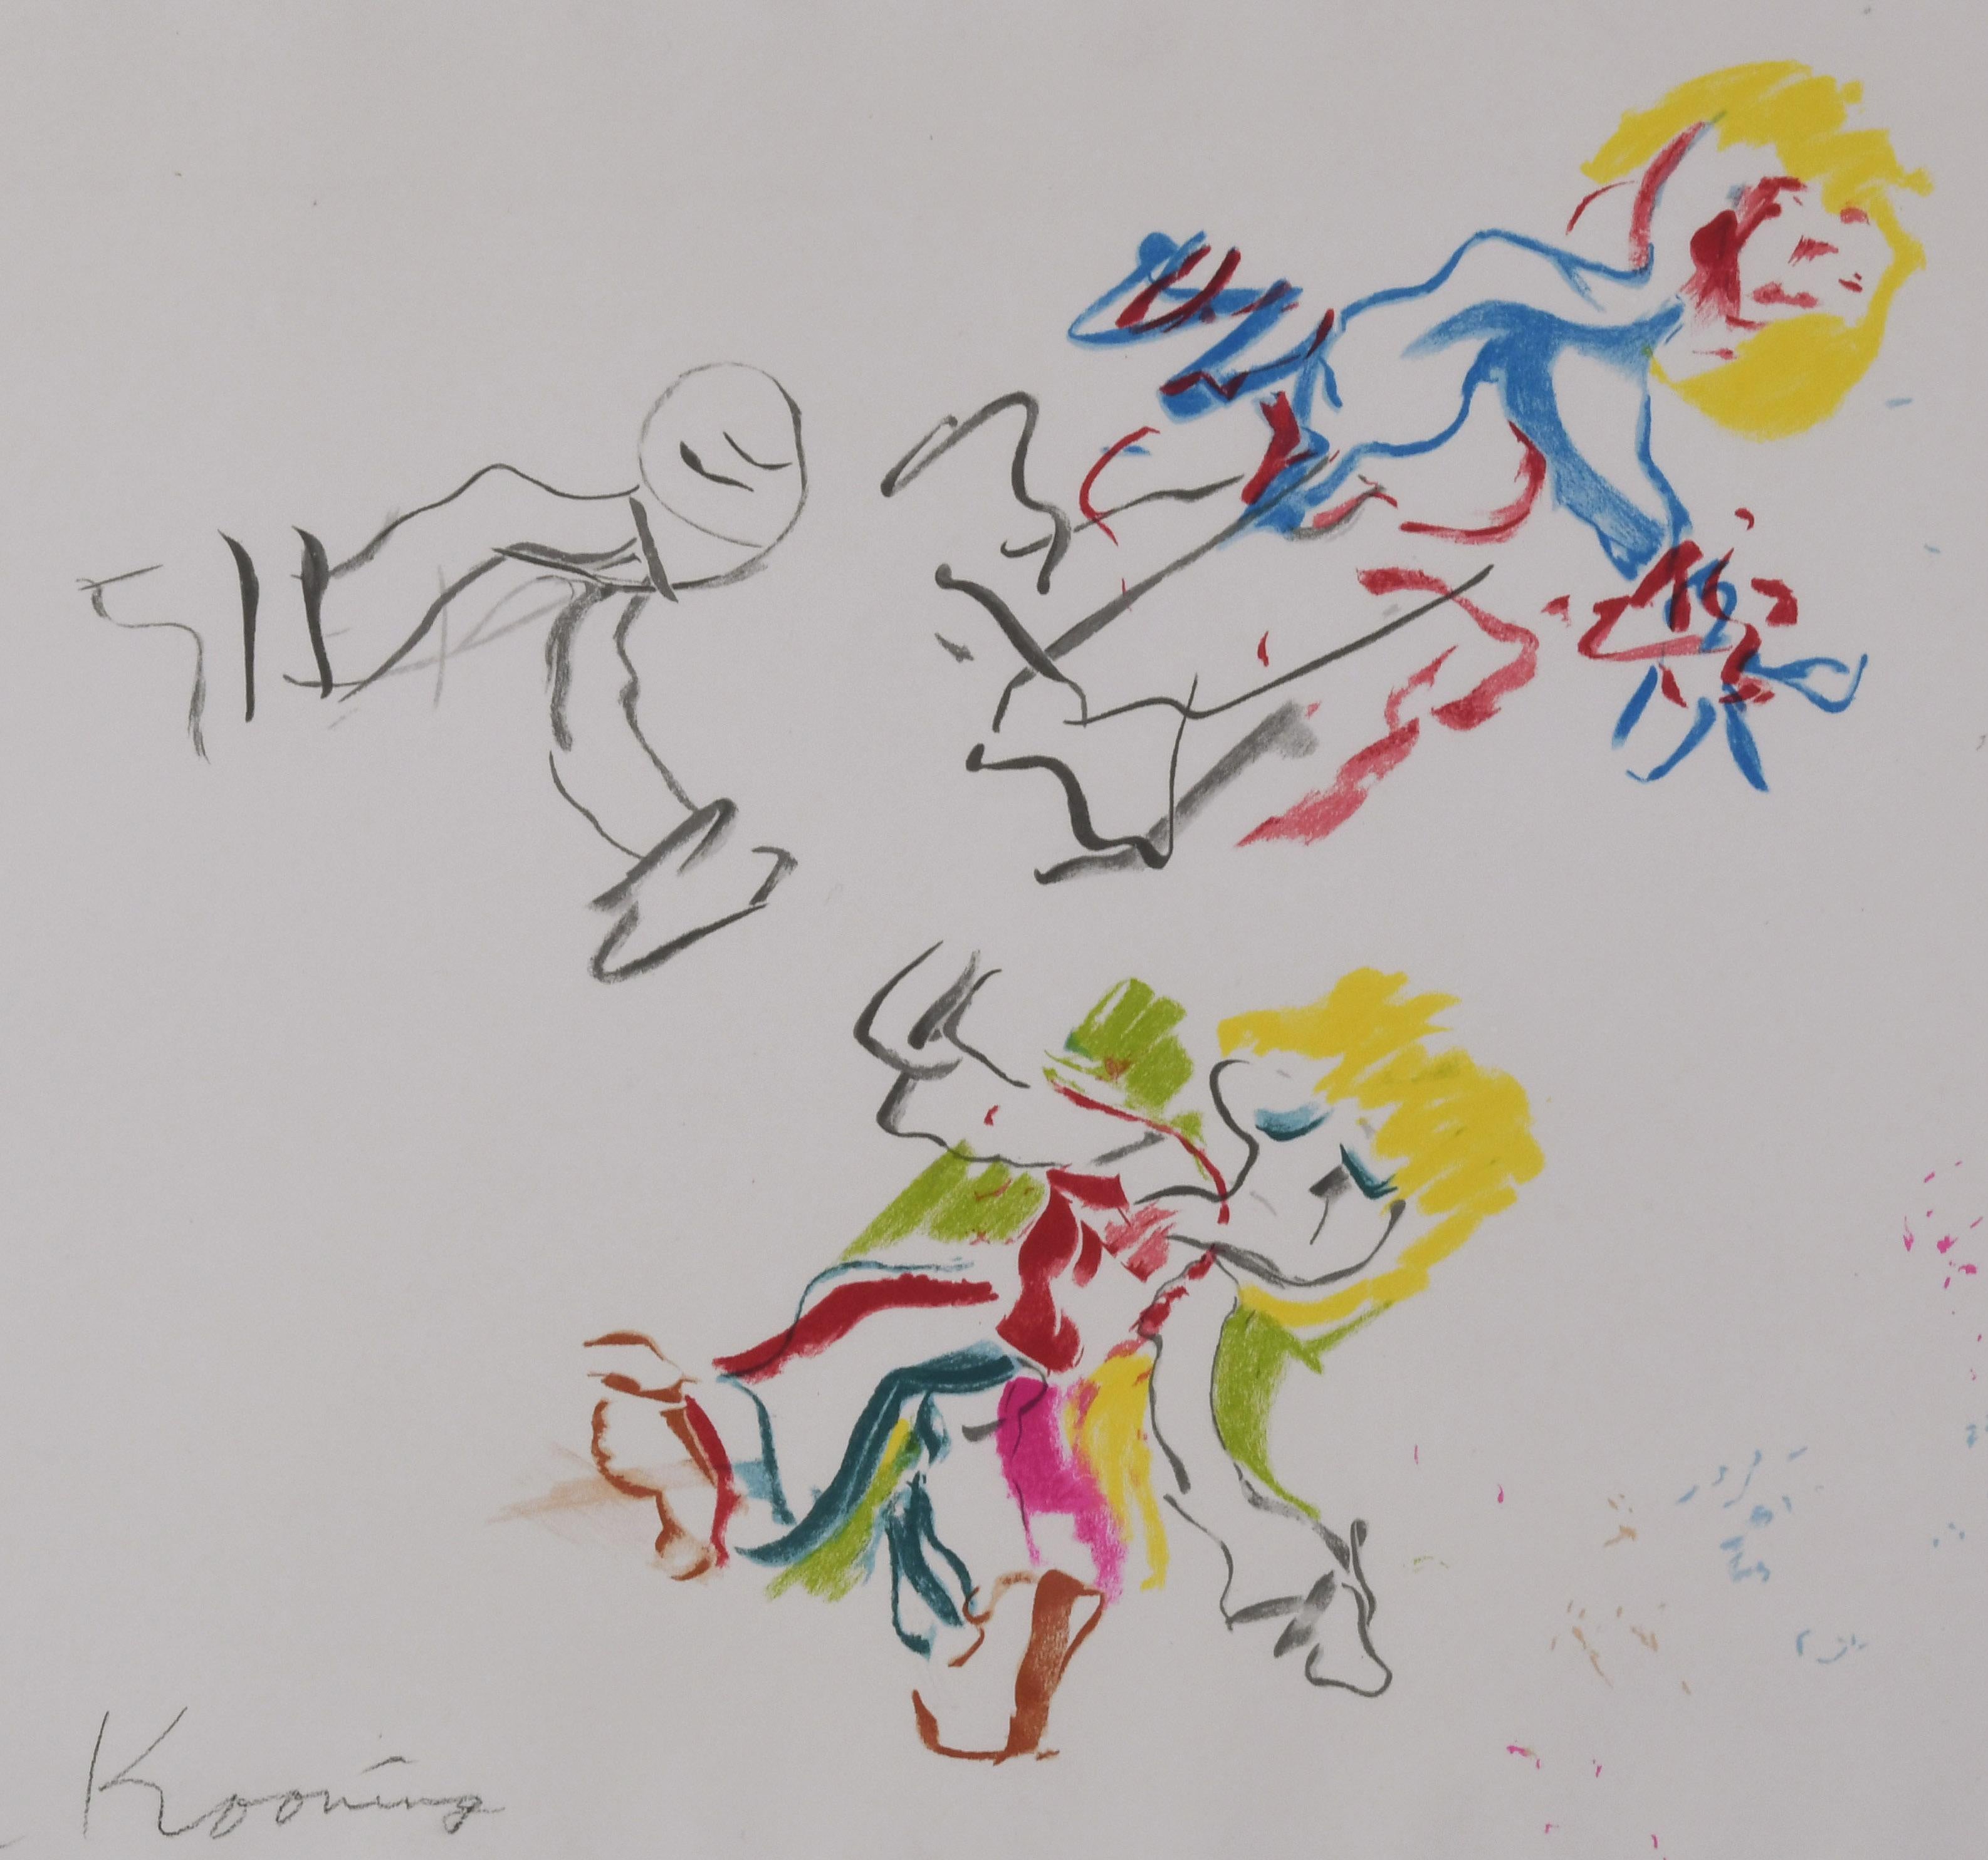 Pour Lisa
Lithographie en couleur, 1984
Signé au crayon en bas à gauche (voir photo)
Numéroté dans le coin inférieur droit
Publié au profit du Los Angeles Children's Museum
Imprimé par Brand X Editions New York, leur tampon en bas à gauche.
Edition